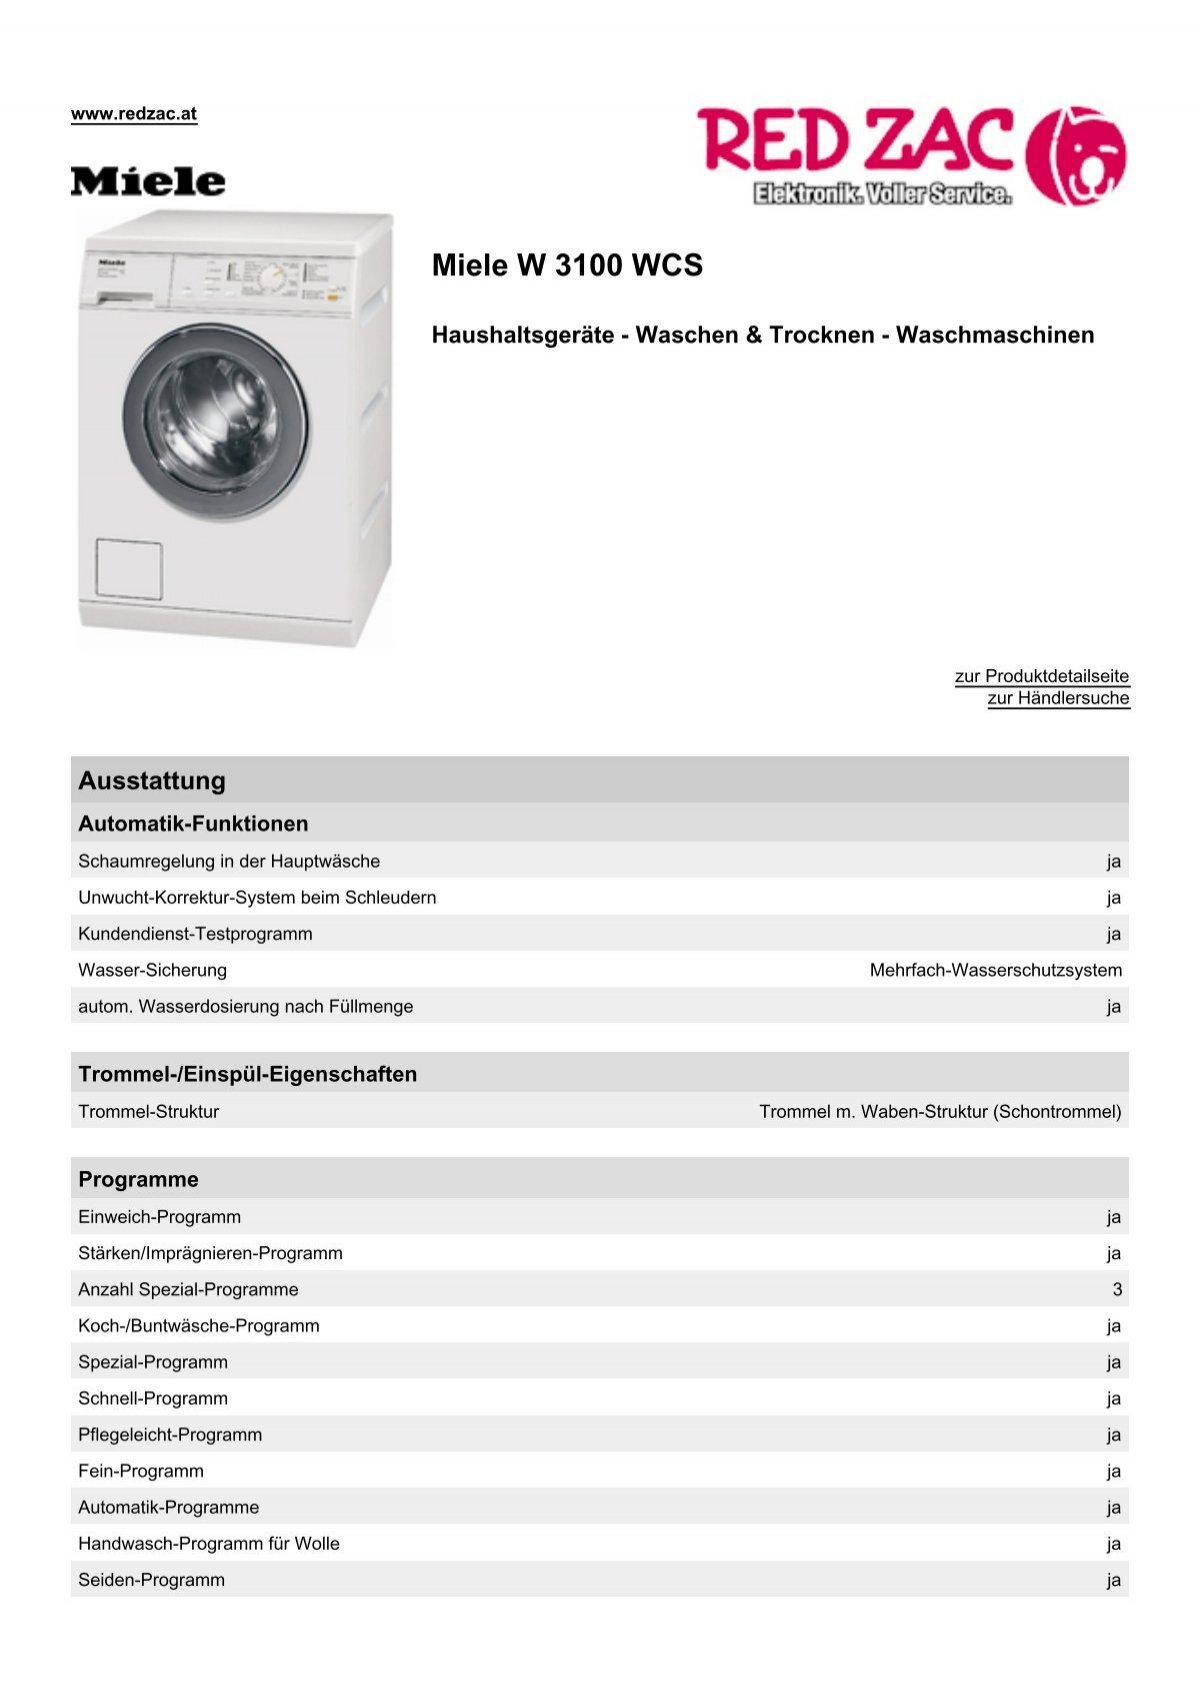 Produktdatenblatt Miele W 3100 WCS - Red Zac